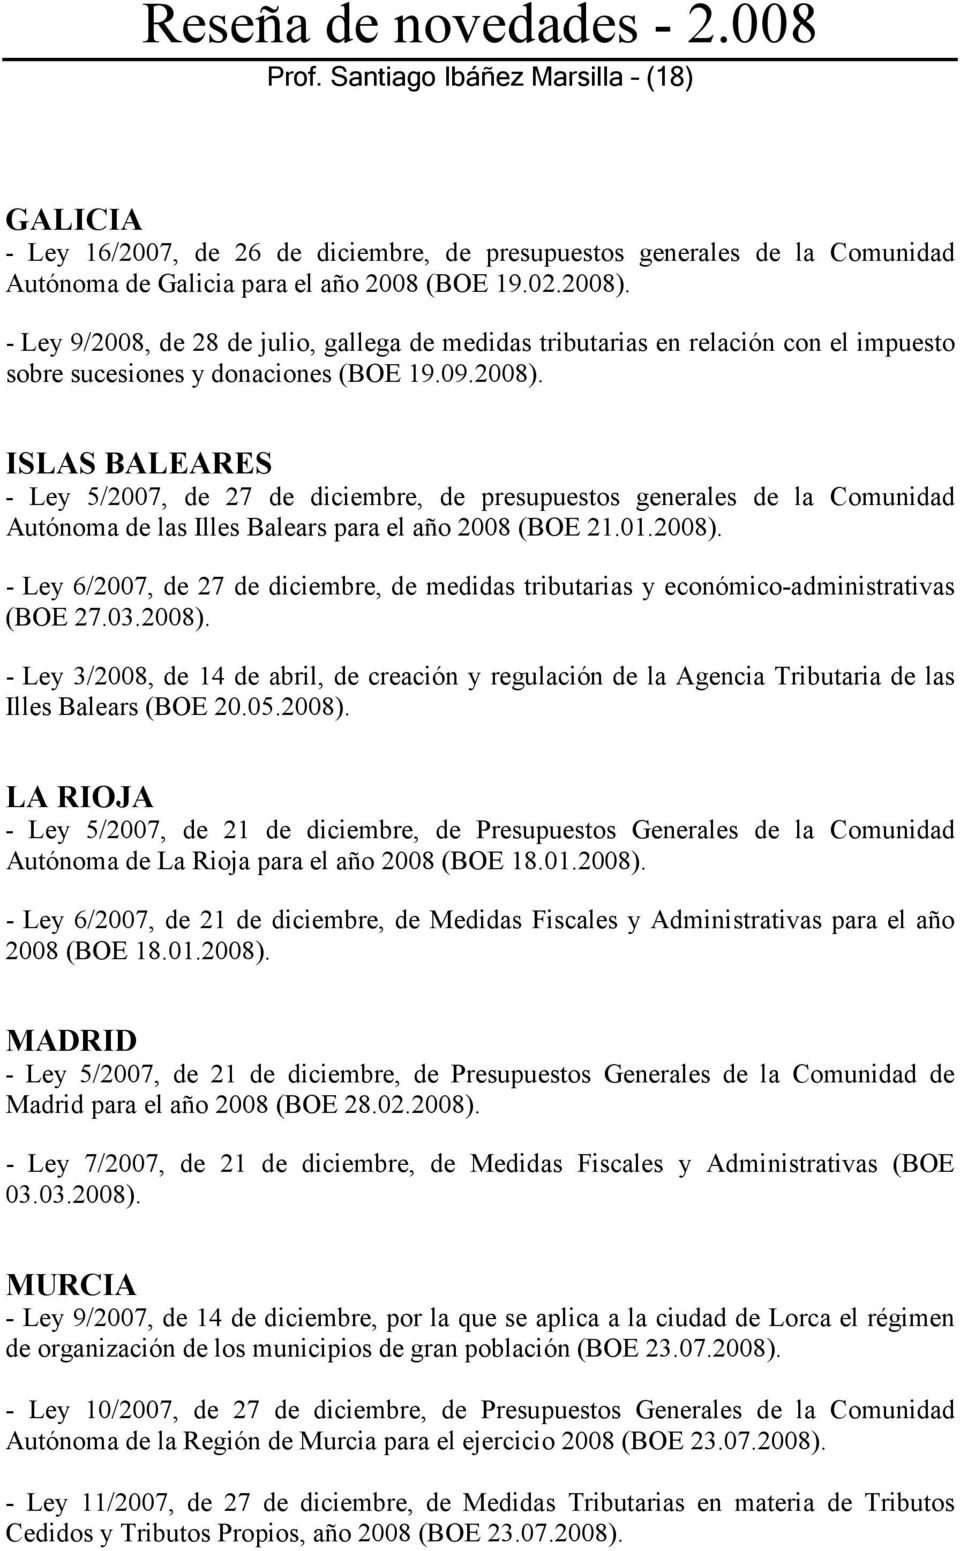 ISLAS BALEARES - Ley 5/2007, de 27 de diciembre, de presupuestos generales de la Comunidad Autónoma de las Illes Balears para el año 2008 (BOE 21.01.2008).